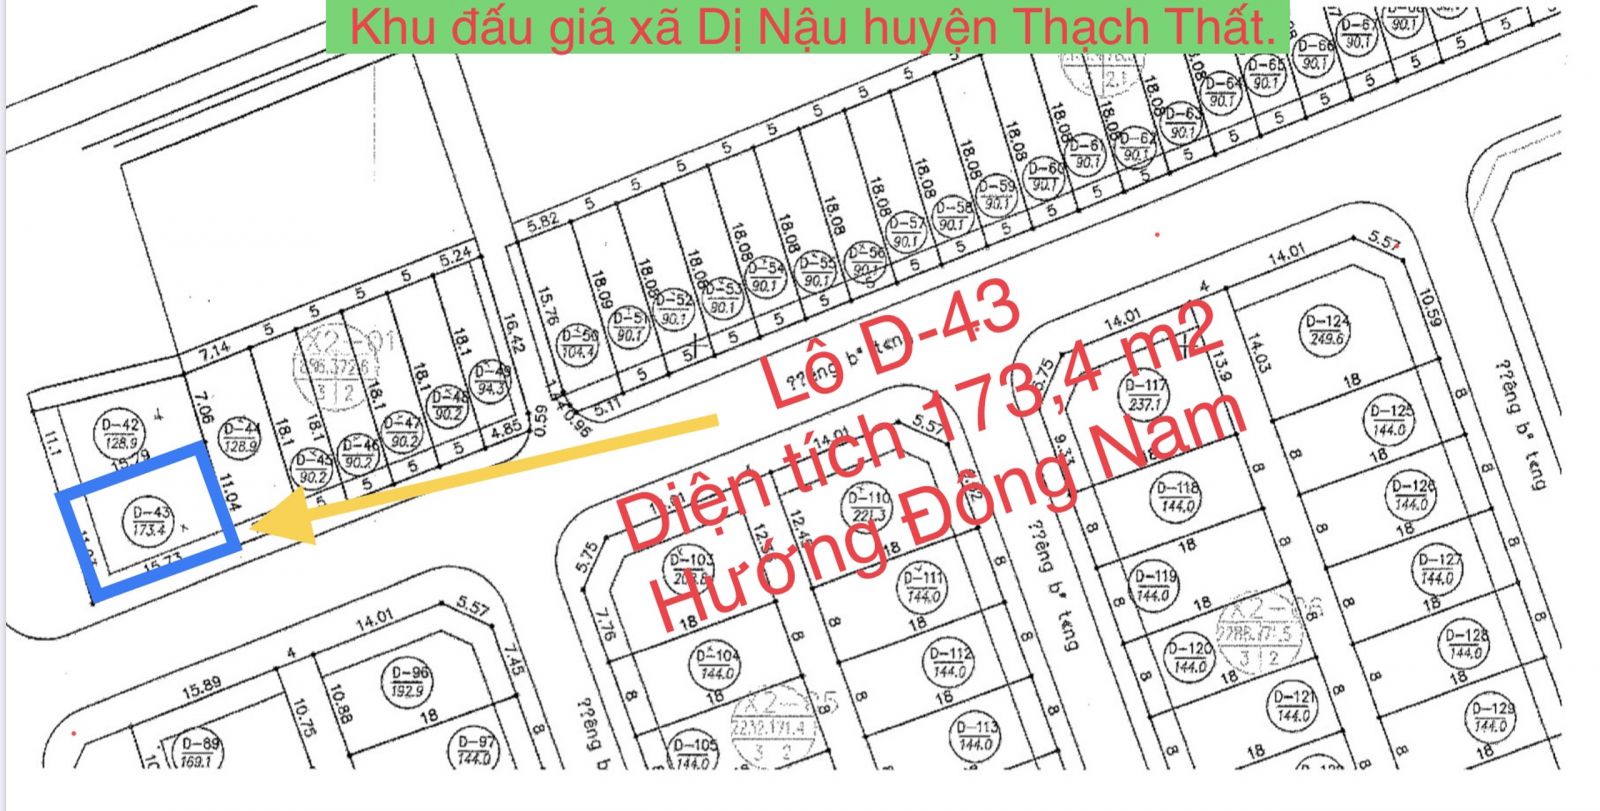 Lô D43 đất đấu giá xã Dị Nậu huyện Thạch Thất